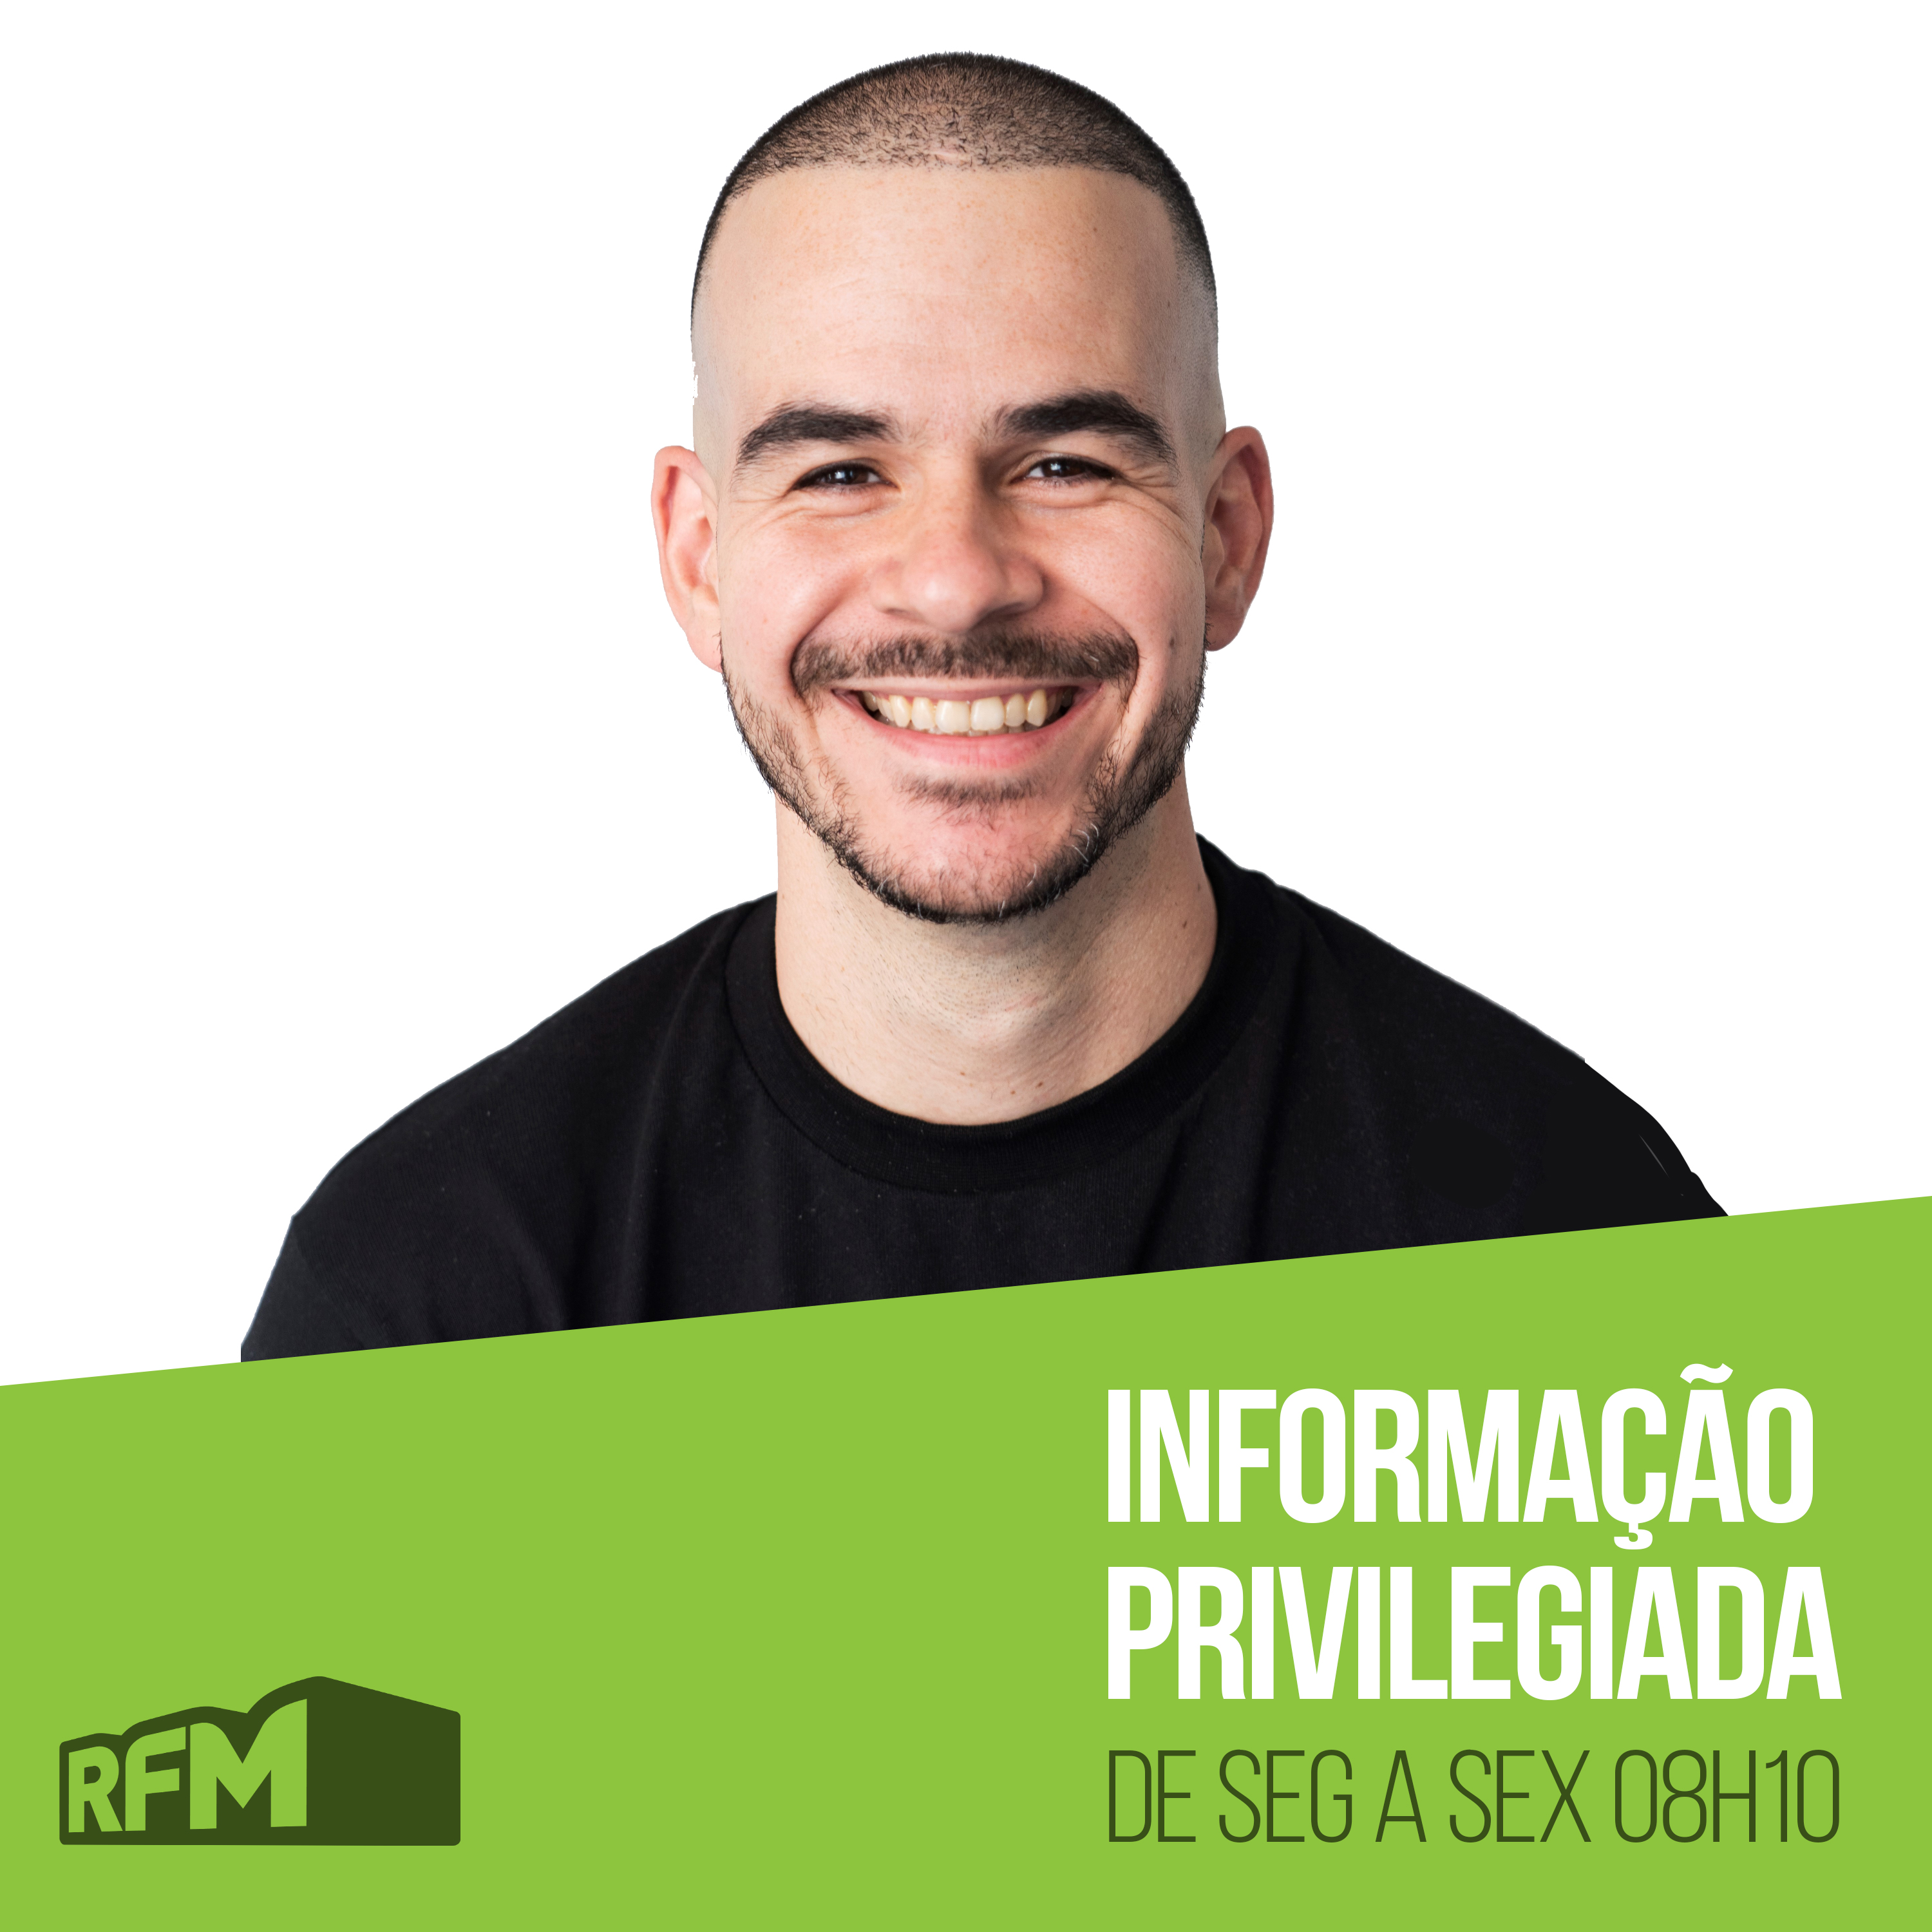 RFM - Informação Privilegiada: PALEONTÓLOGO COM PROBLEMA DE SAÚDE